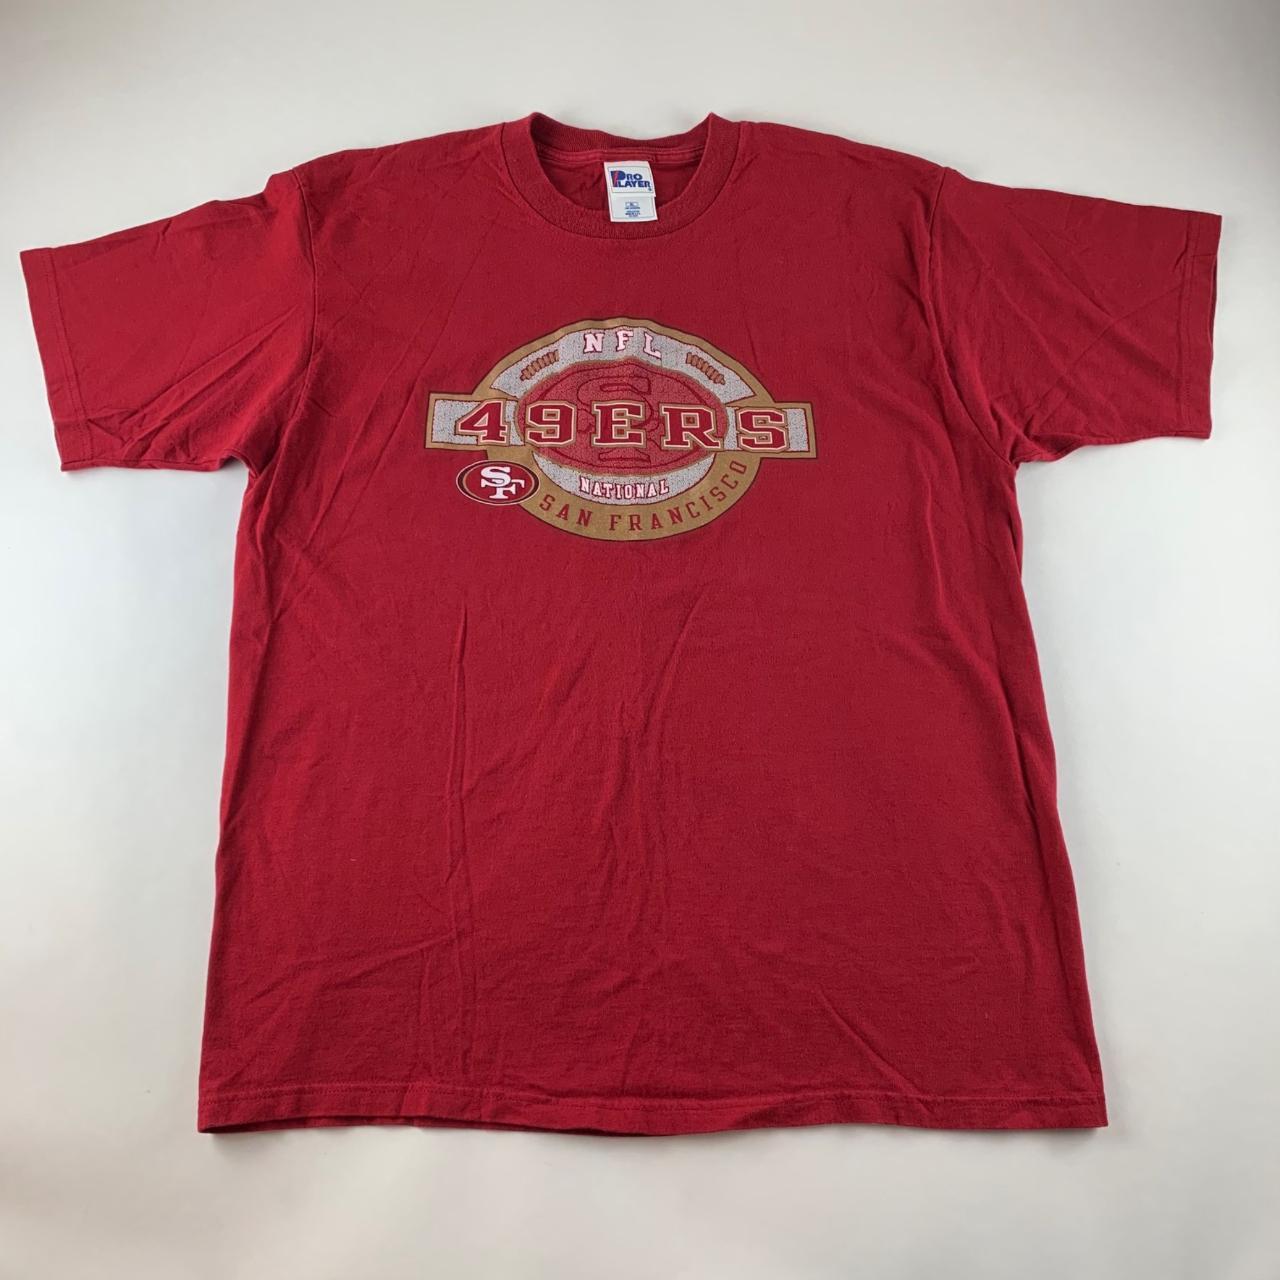 For Sale: Item Name: San Francisco 49ers NFL - Depop